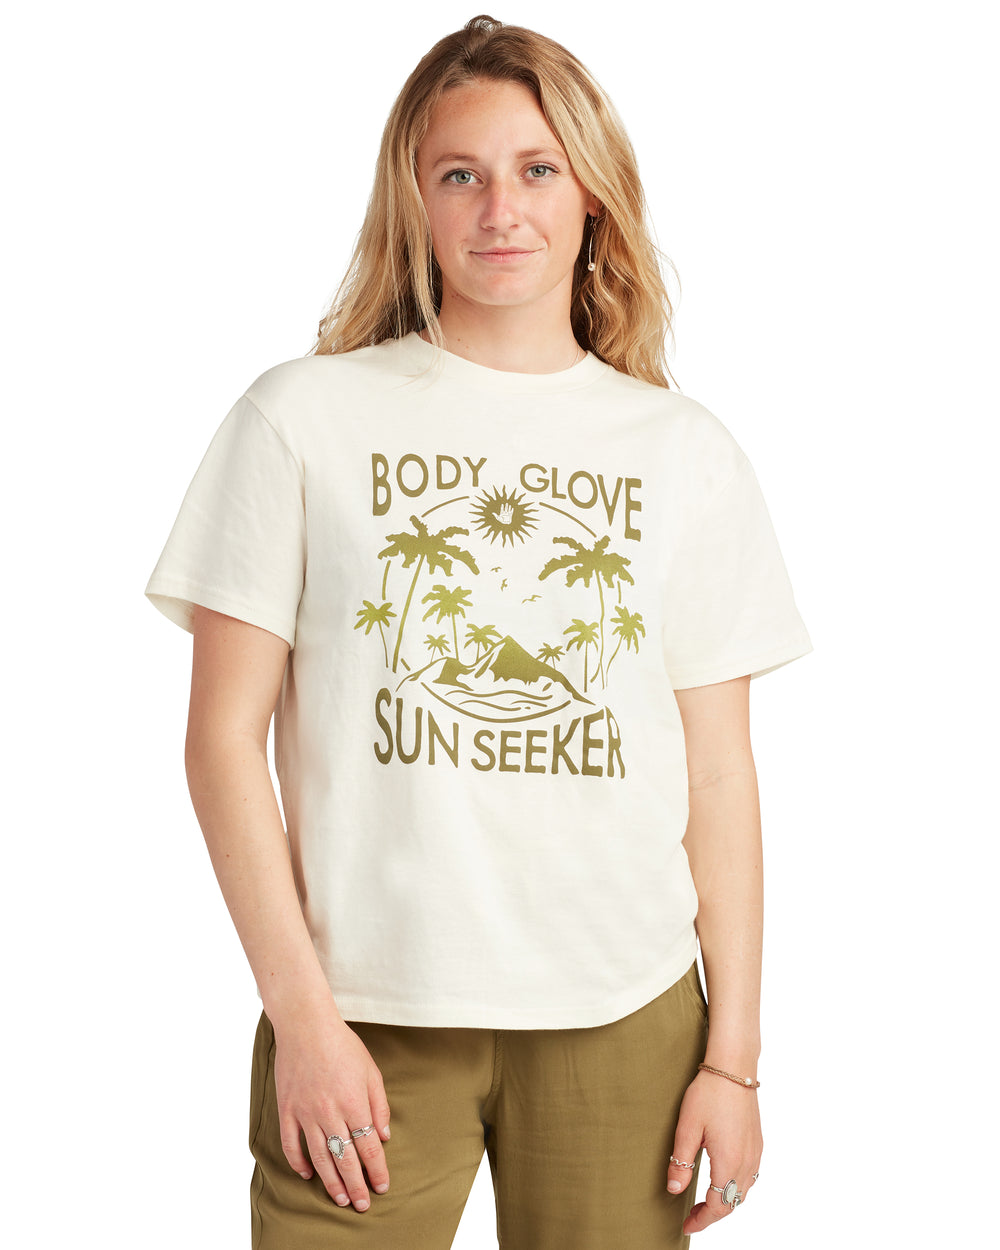 Sun Seeker T-Shirt - Cream - Body Glove